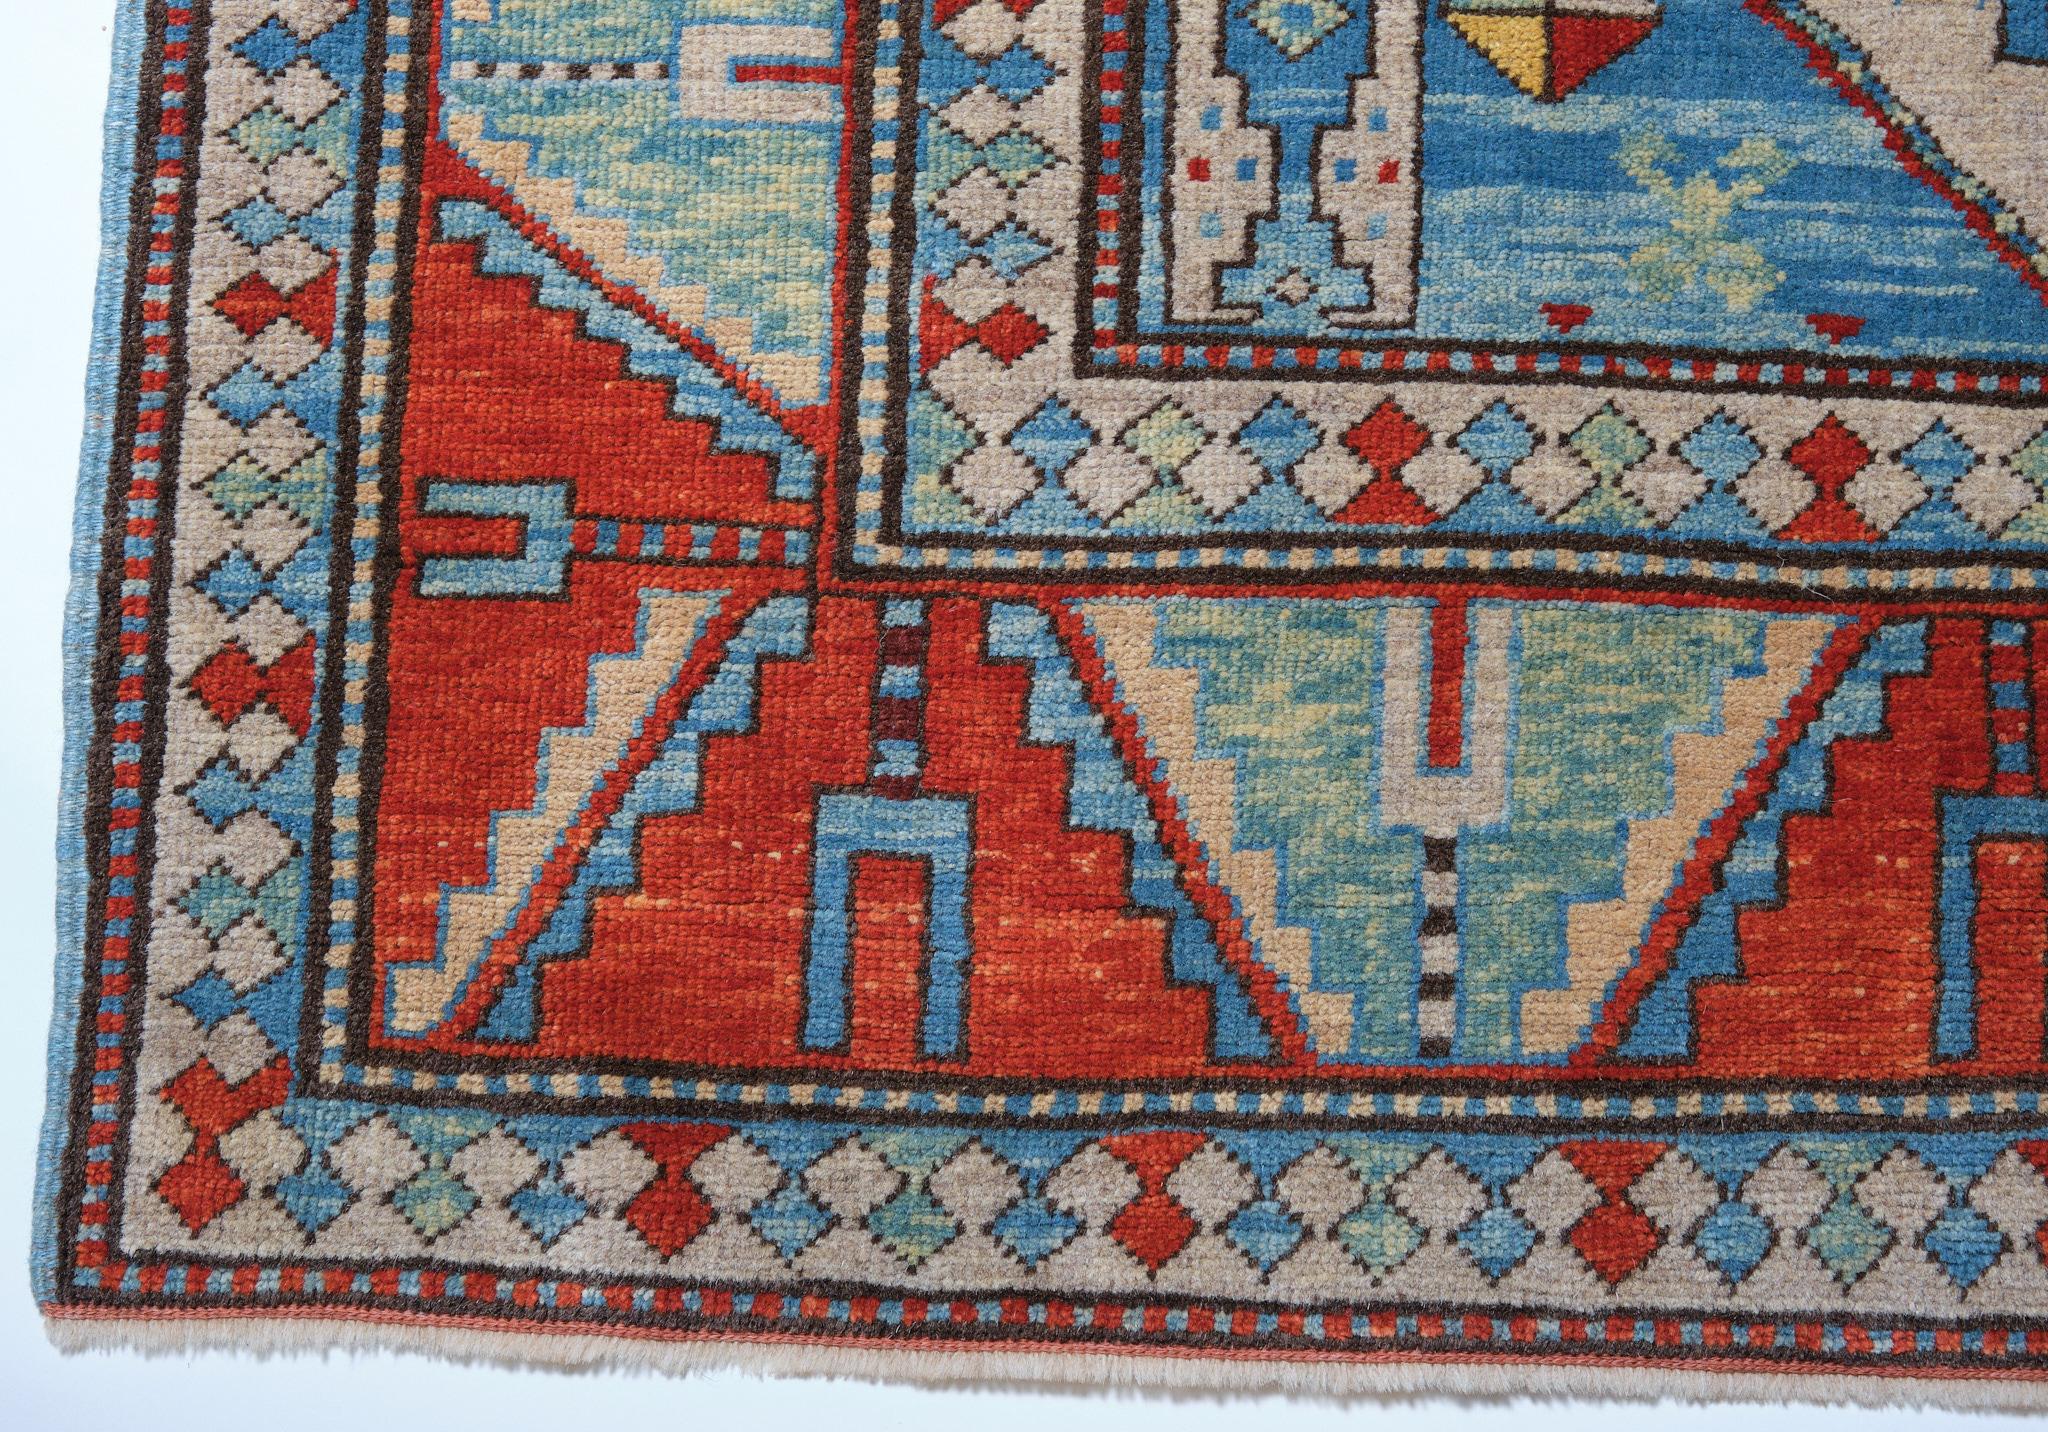 Die Quelle des Teppichs stammt aus dem Buch Oriental Rugs Volume 1 Caucasian, Ian Bennett, Oriental Textile Press, Aberdeen 1993, S. 24. Dies ist ein Medaillonteppich aus dem späten 19. Jahrhundert, Region Lori-Pambak, Kaukasusgebiet. Lori-Pambak,